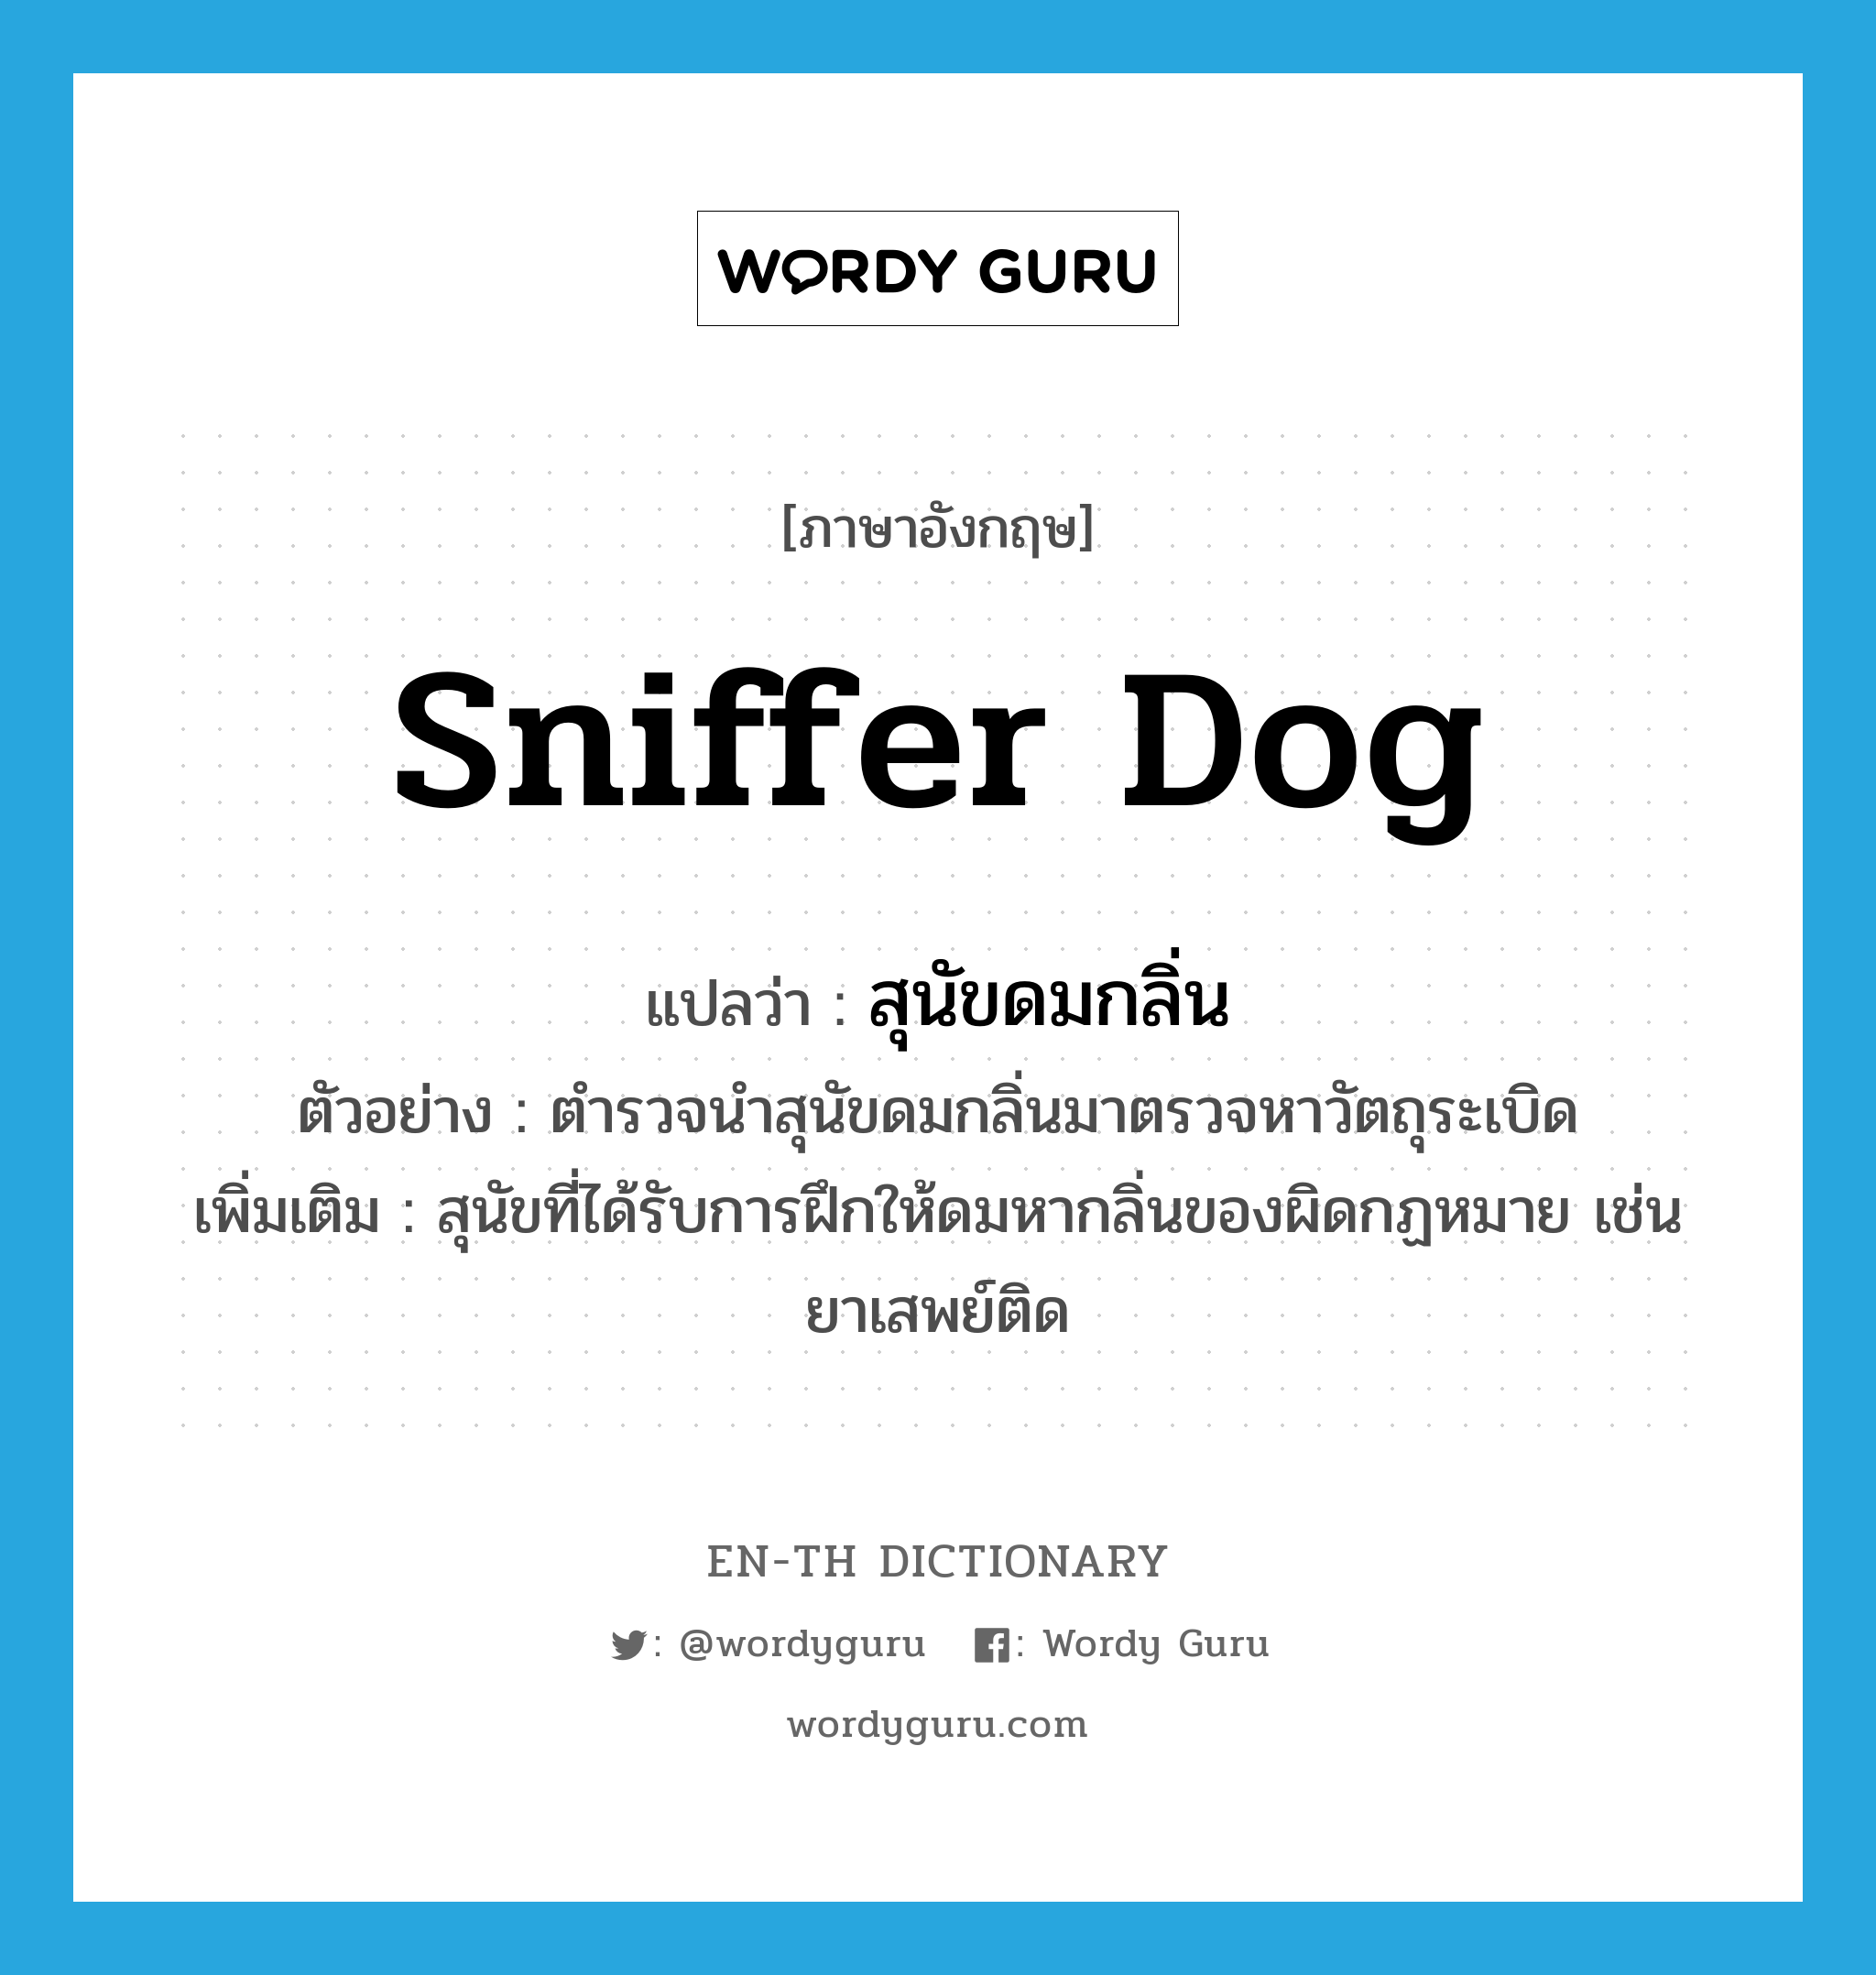 sniffer dog แปลว่า?, คำศัพท์ภาษาอังกฤษ sniffer dog แปลว่า สุนัขดมกลิ่น ประเภท N ตัวอย่าง ตำรวจนำสุนัขดมกลิ่นมาตรวจหาวัตถุระเบิด เพิ่มเติม สุนัขที่ได้รับการฝึกให้ดมหากลิ่นของผิดกฏหมาย เช่น ยาเสพย์ติด หมวด N